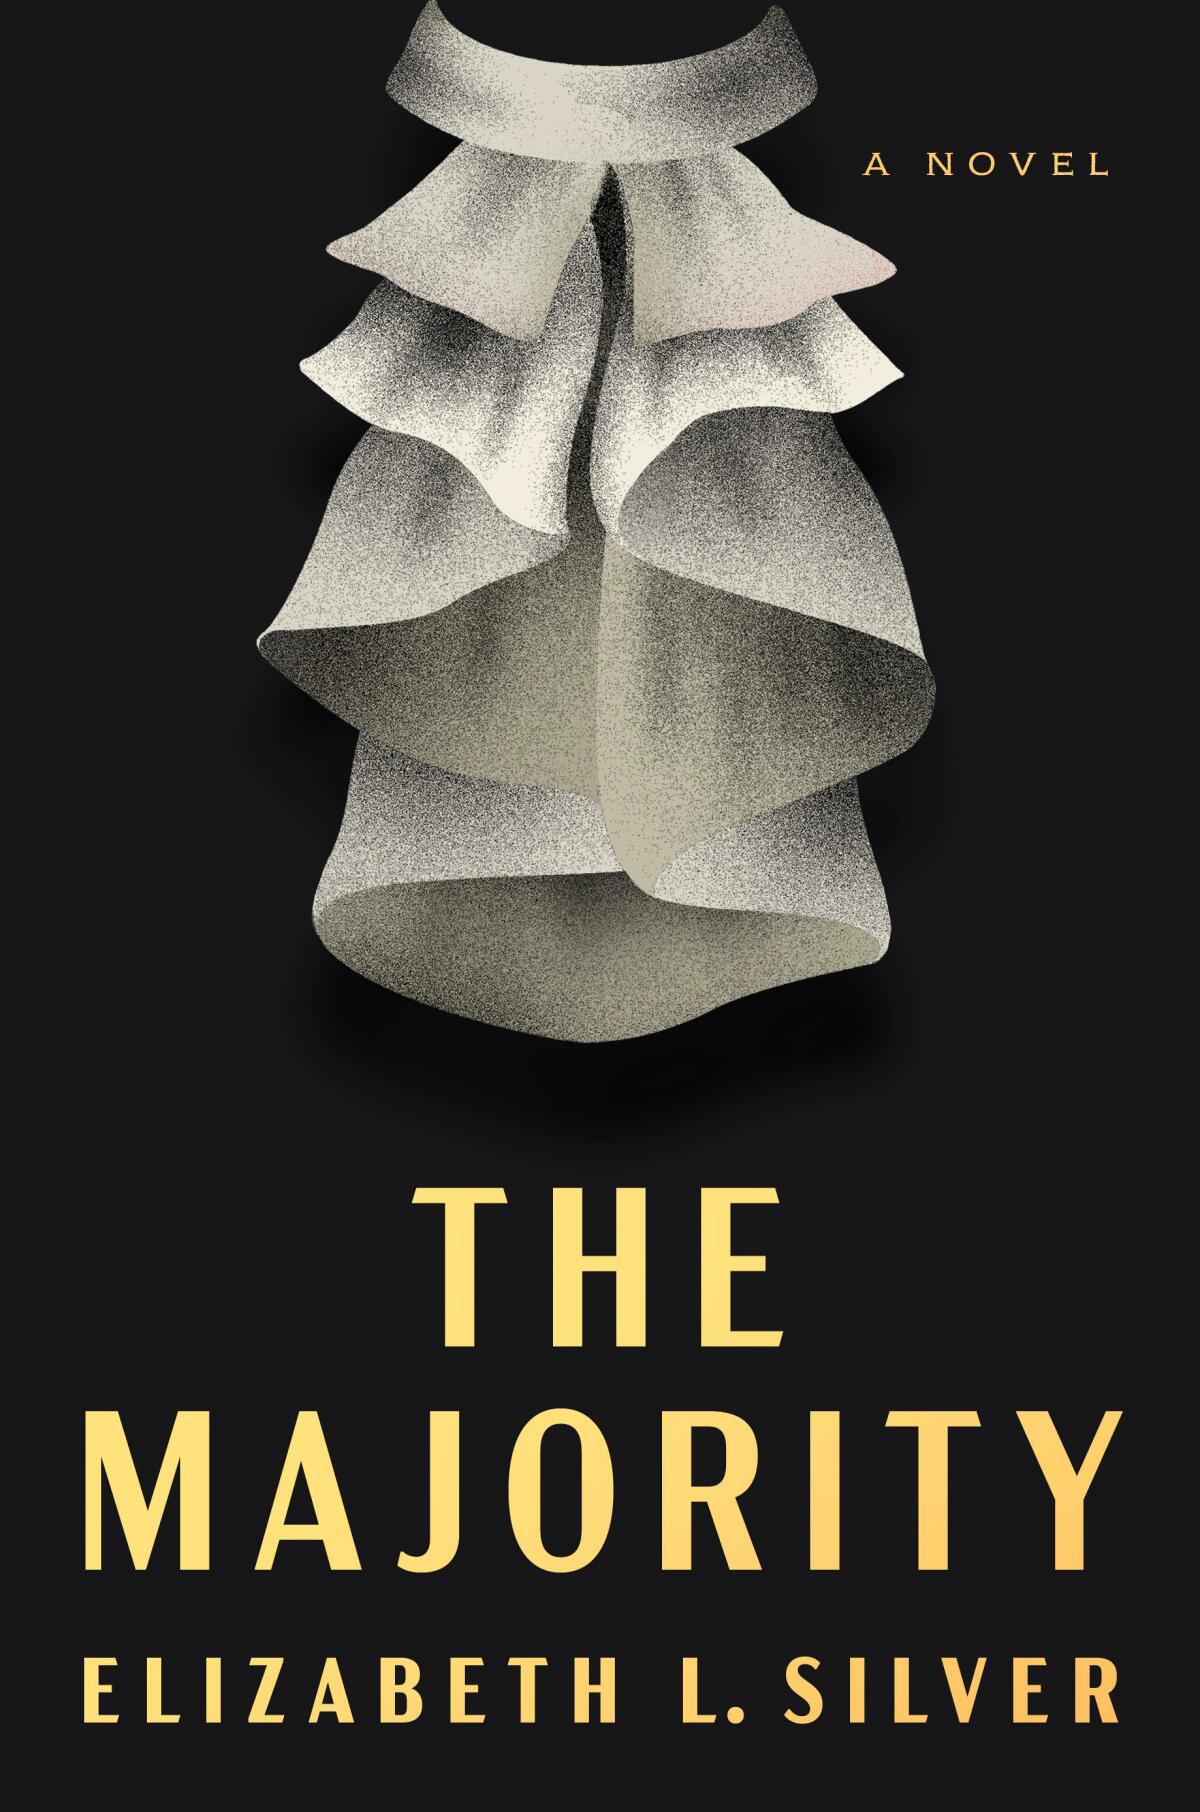 "The Majority," by Elizabeth L. Silver